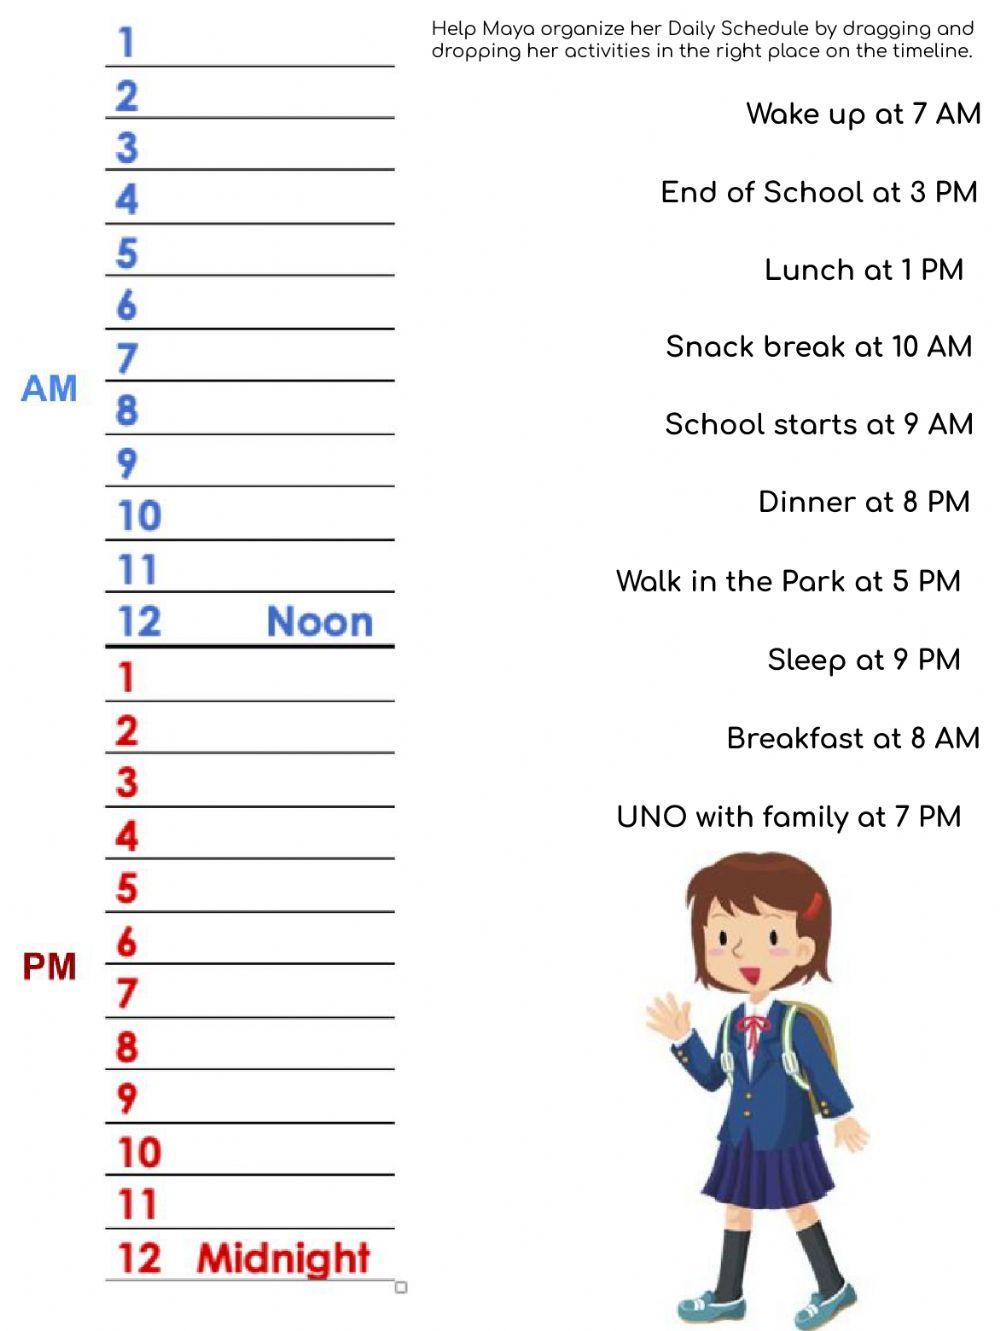 Maya's Schedule